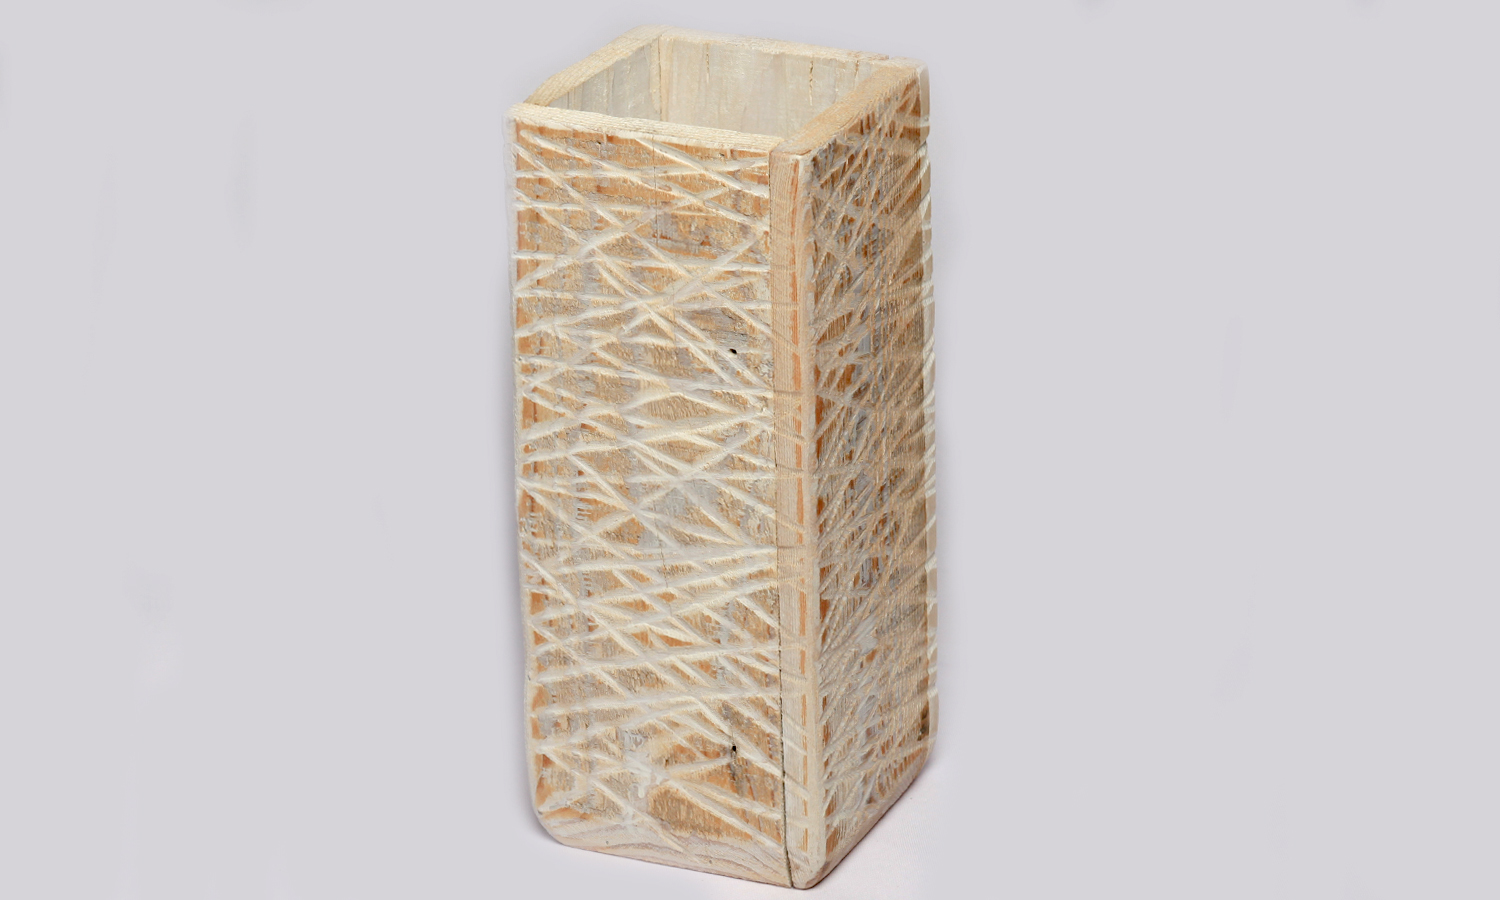  Holz Behälter (Vierkant)